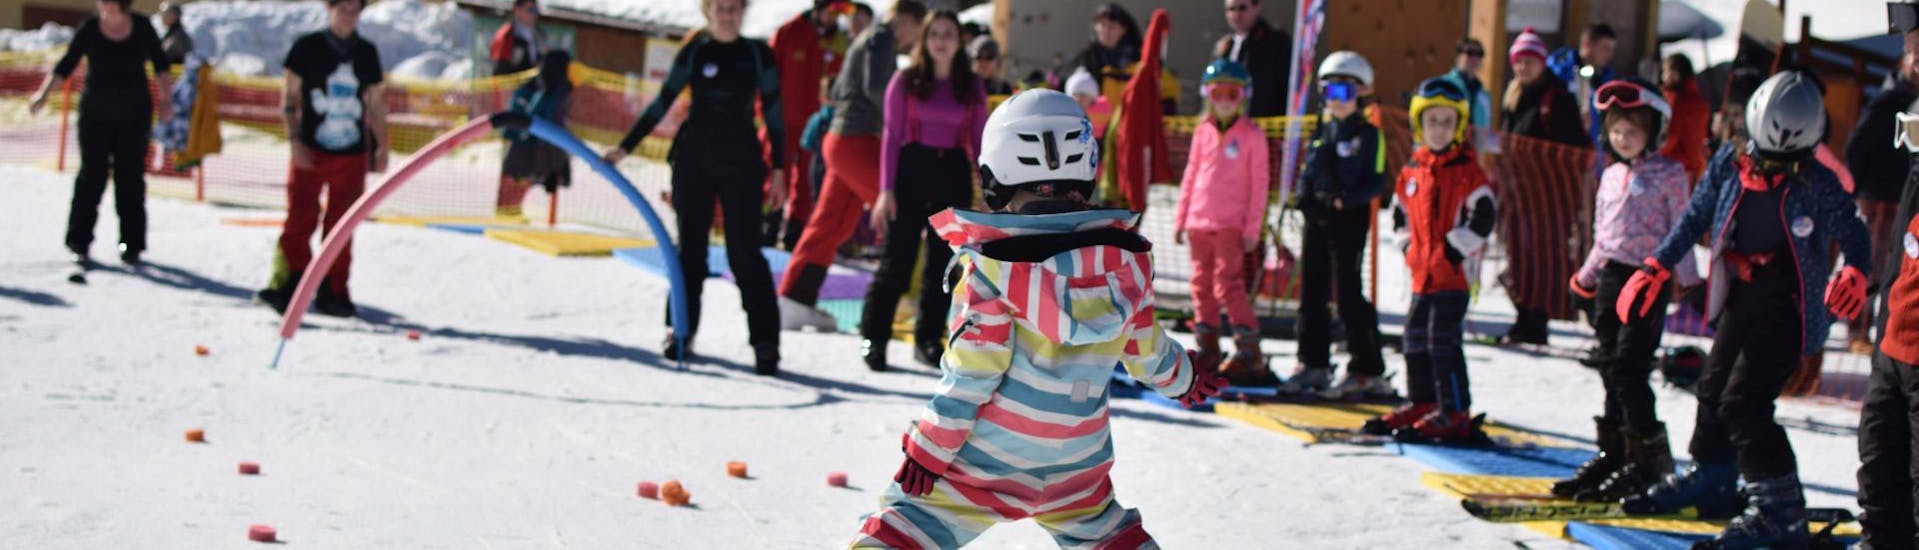 Privé skilessen voor kinderen en tieners van alle leeftijden.